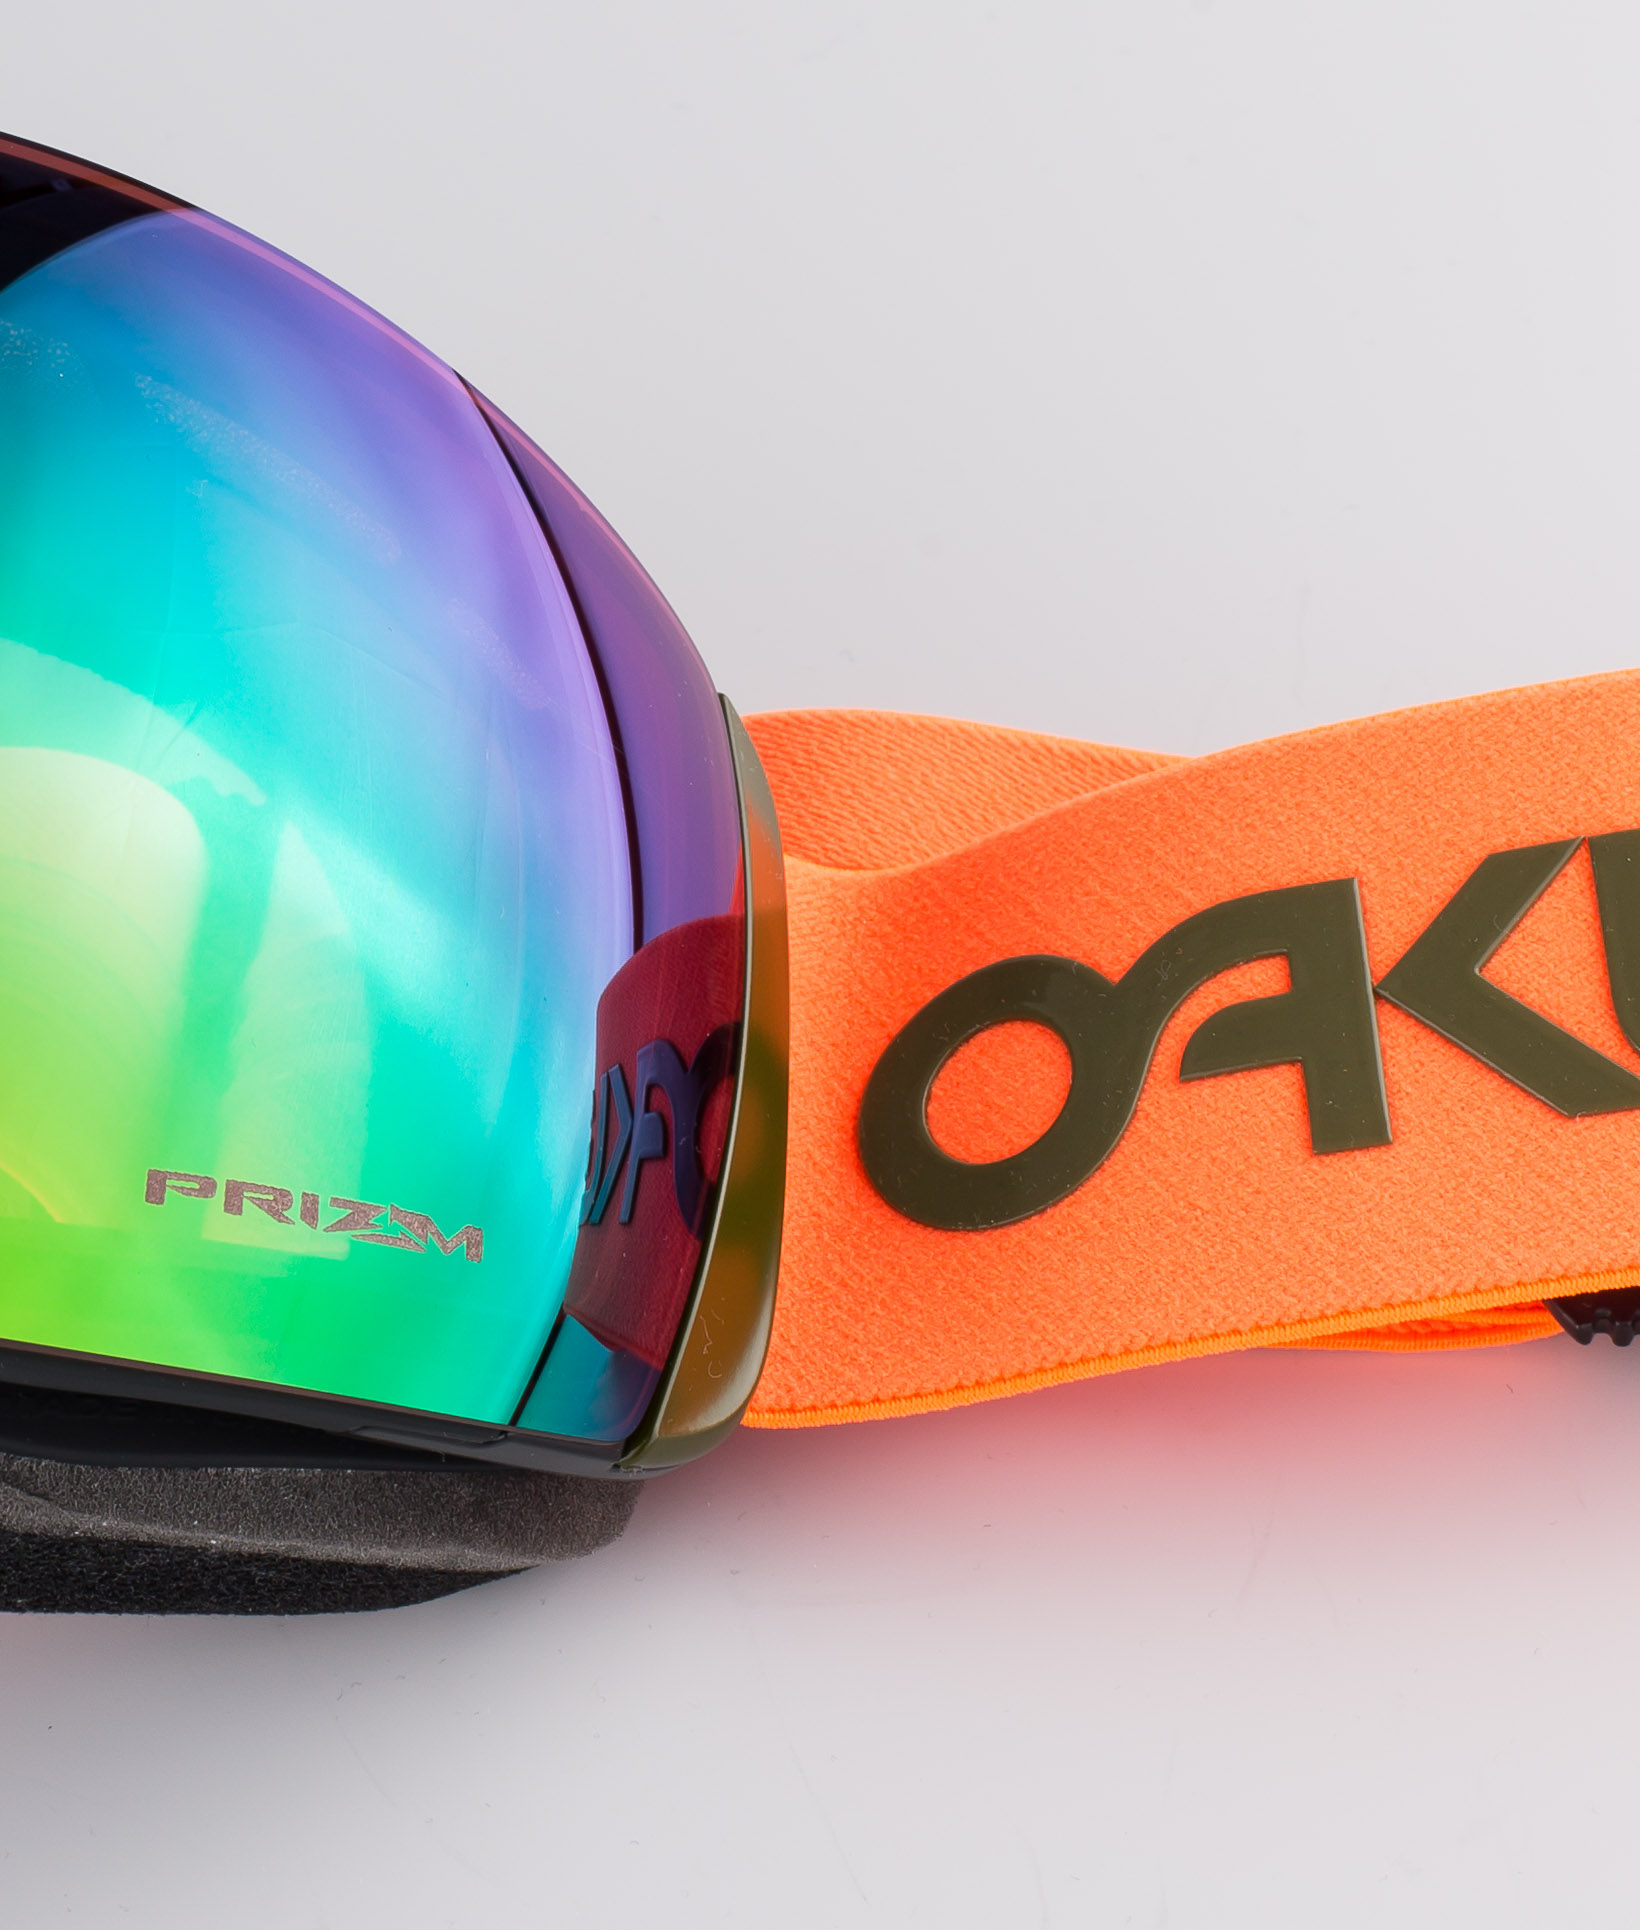 oakley goggles orange